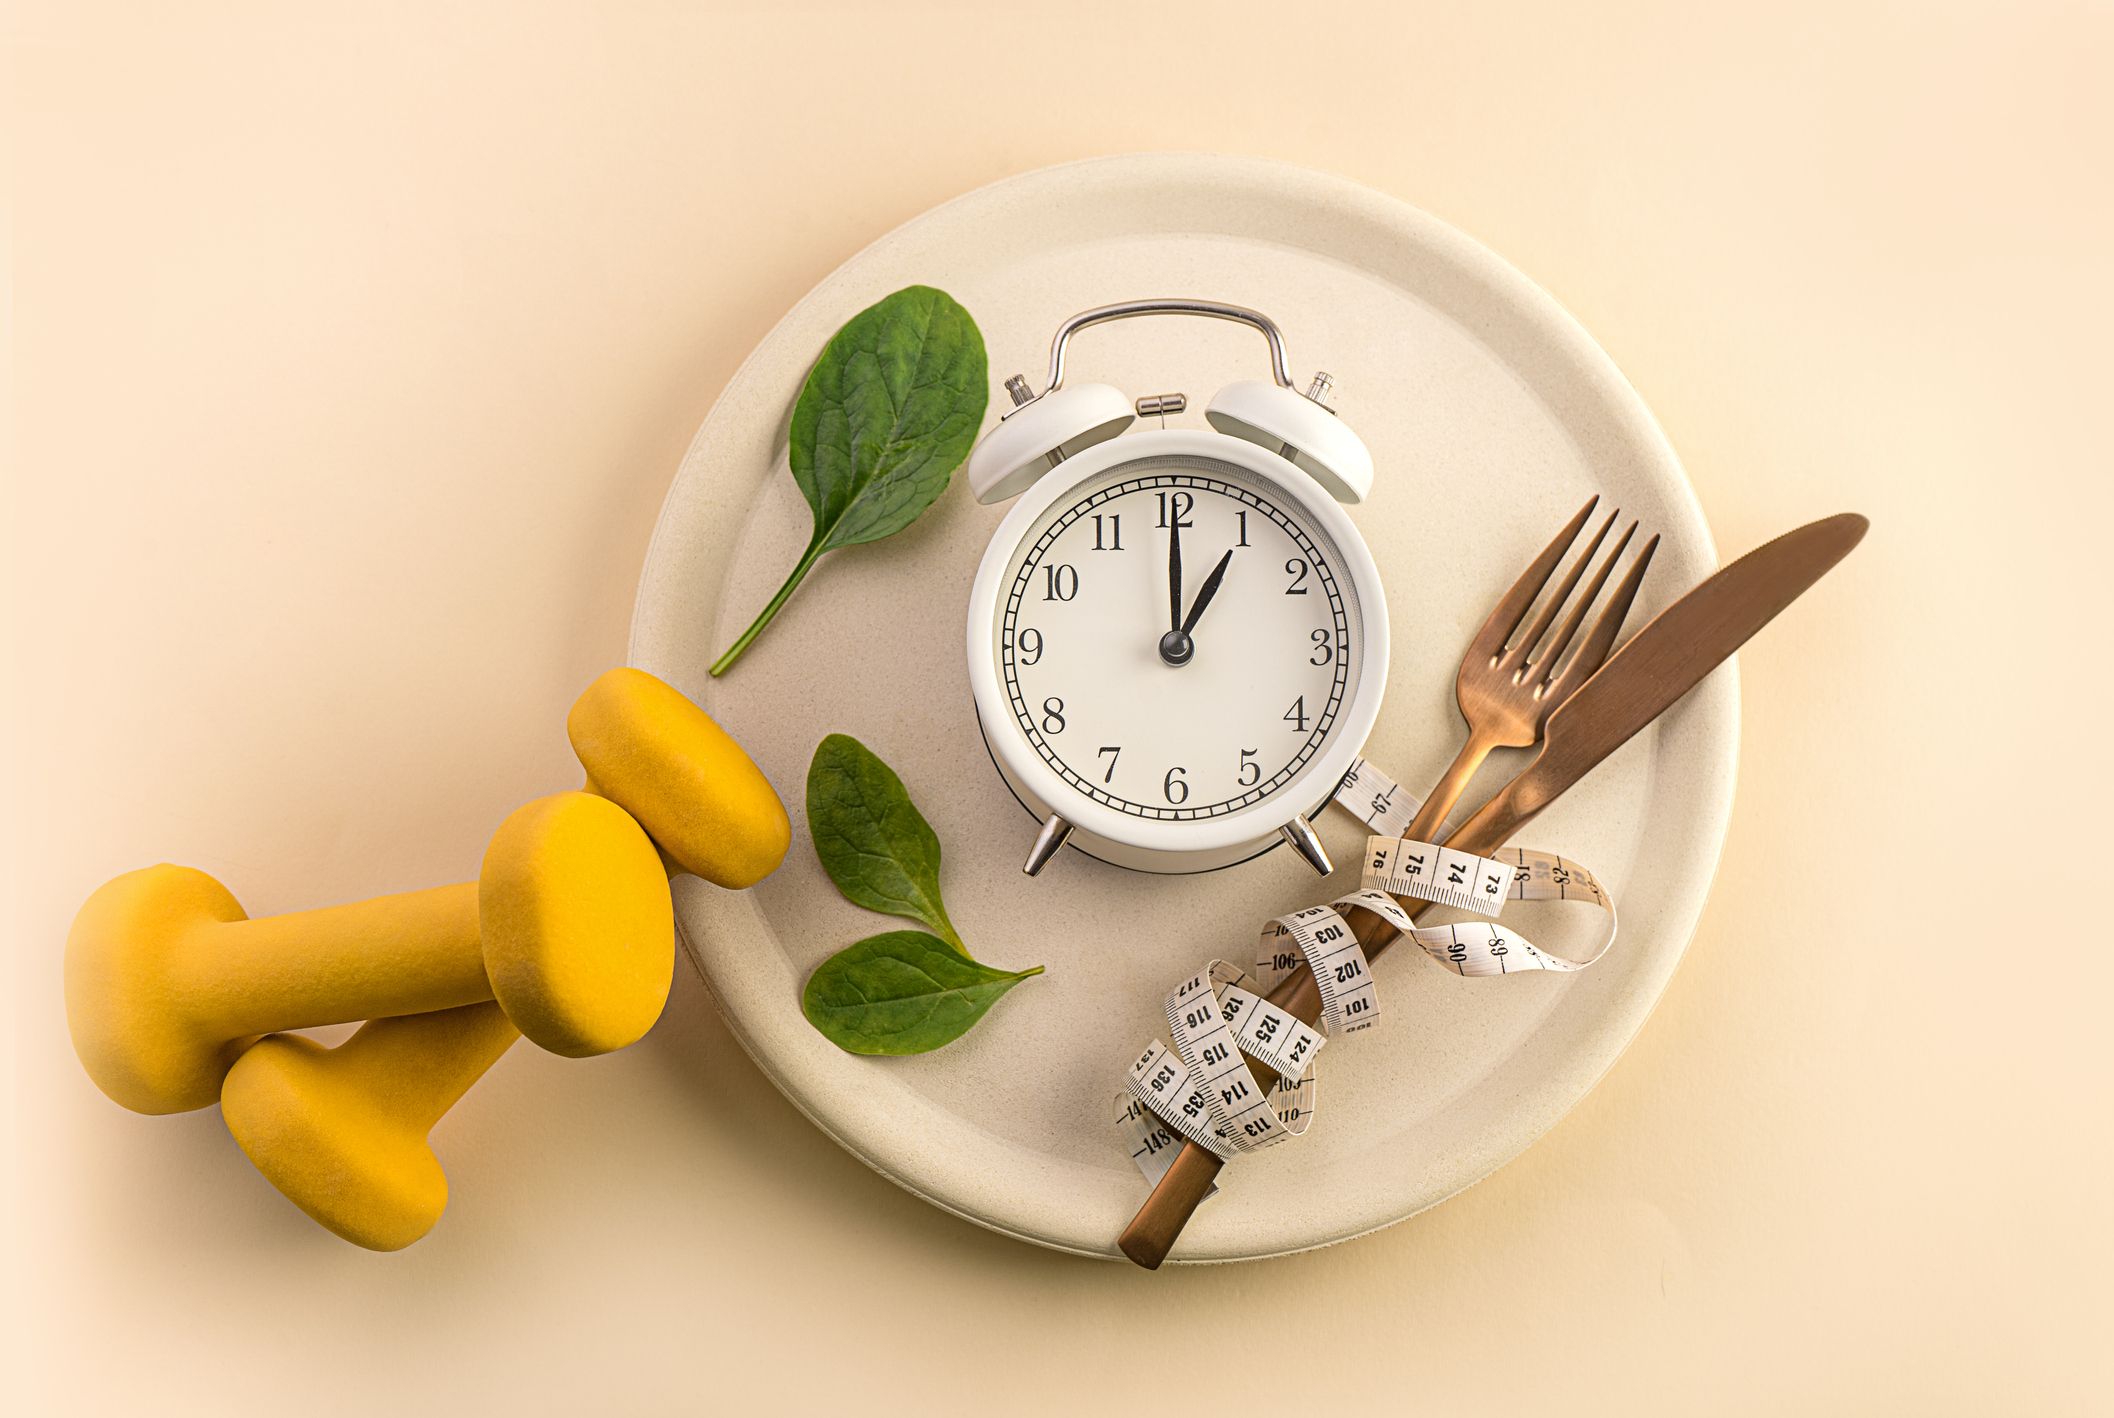 Speiseteller mit Besteck, Maßband, Uhr und Gewichten - Symbolbild für Intervallfasten